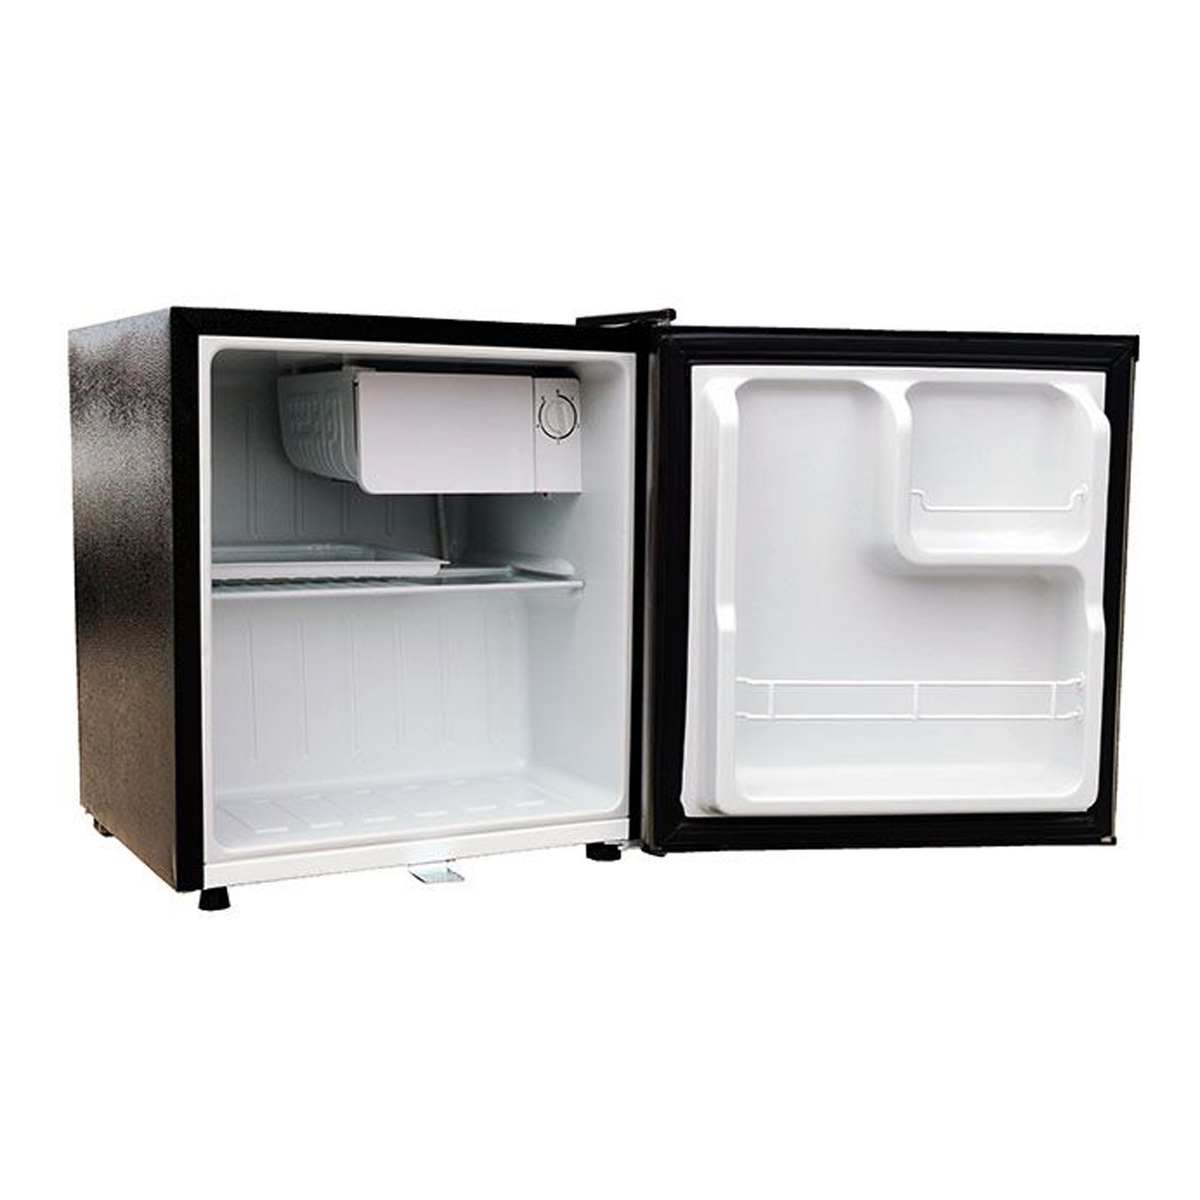 Oscar Single Door Refrigerator, 50 L, Silver, OR-65S